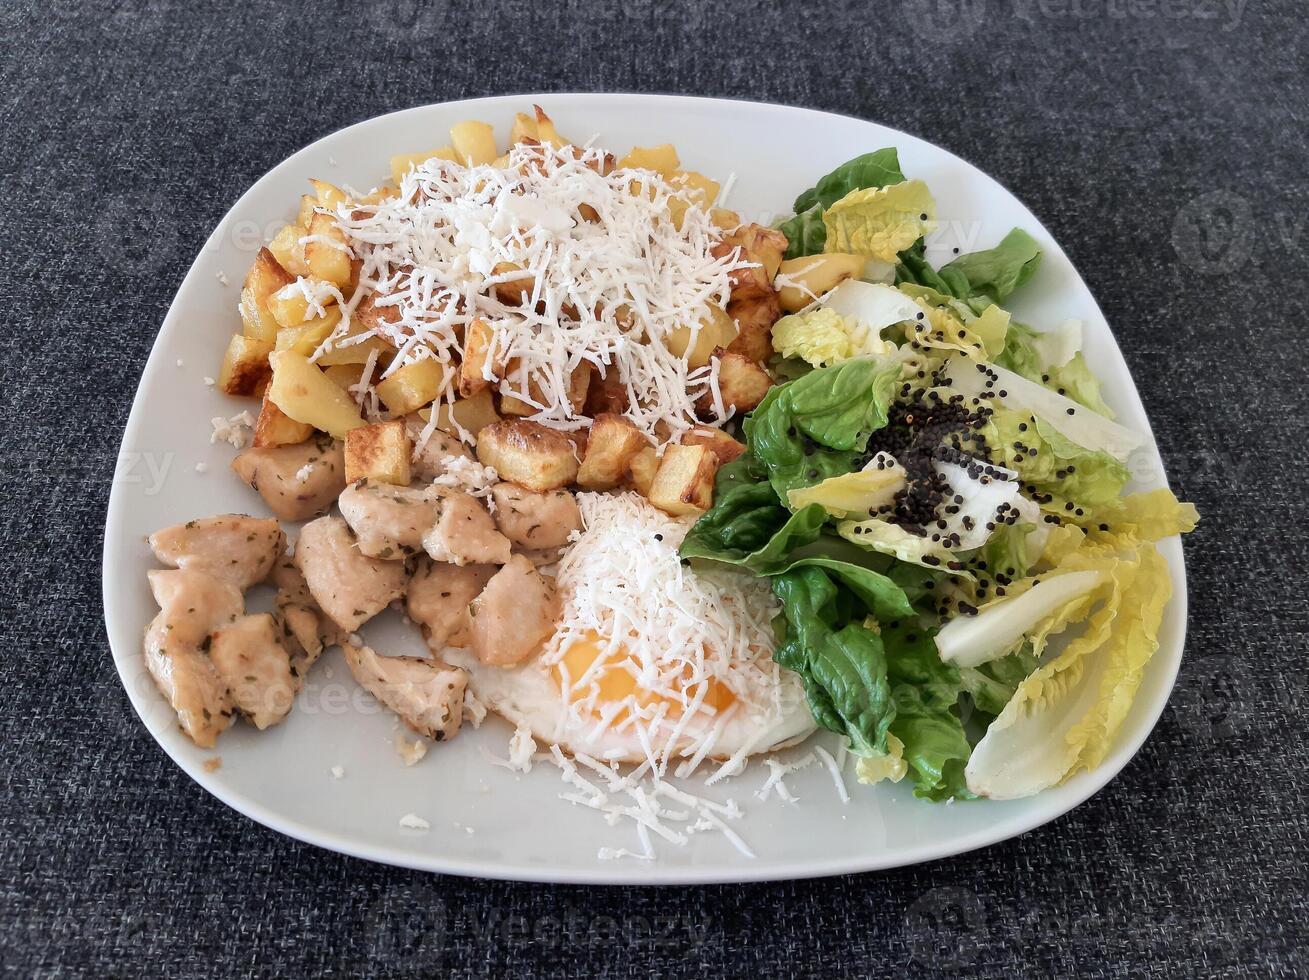 fait maison grillé poulet avec français frites, fromage et vert salade, servi sur une blanc assiette photo